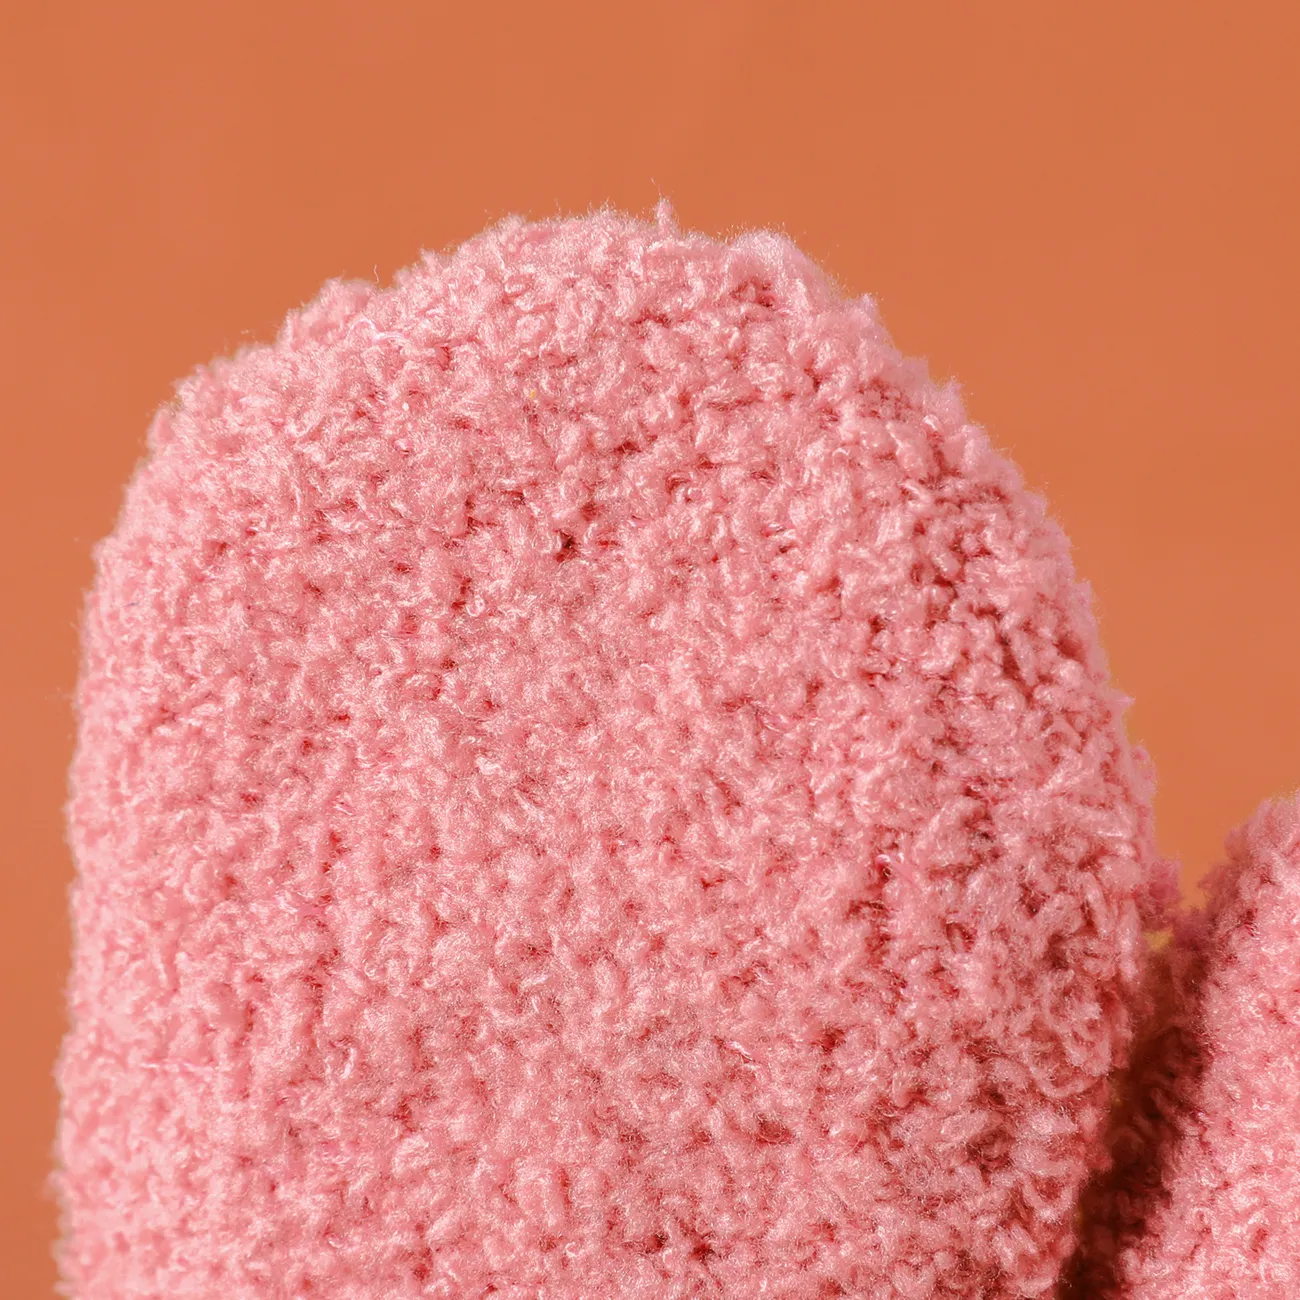 Baby / Toddler Plush Thermal Mittens Gloves Pink big image 1